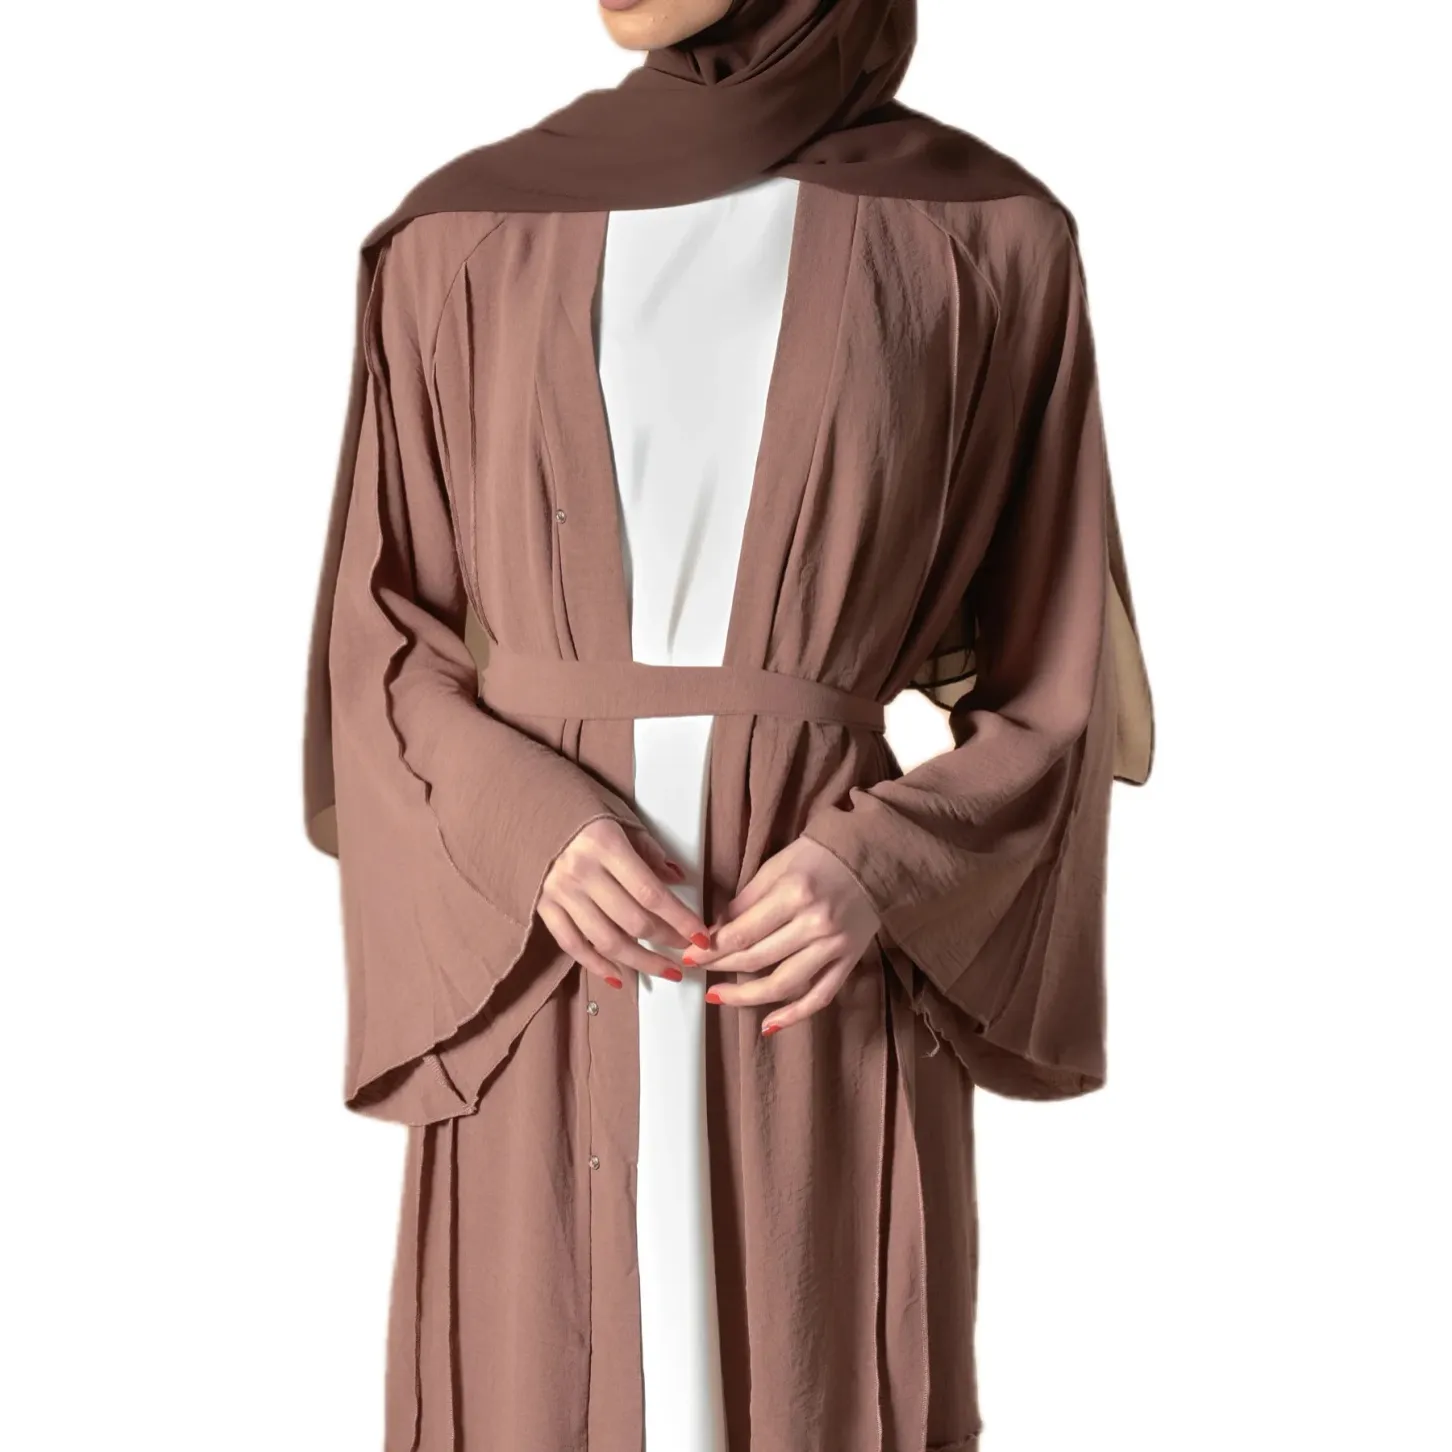 Alevlendi kollu moda Kaftan uzun kollu hırka ile uzun hırka islam giyim müslüman açık Abaya